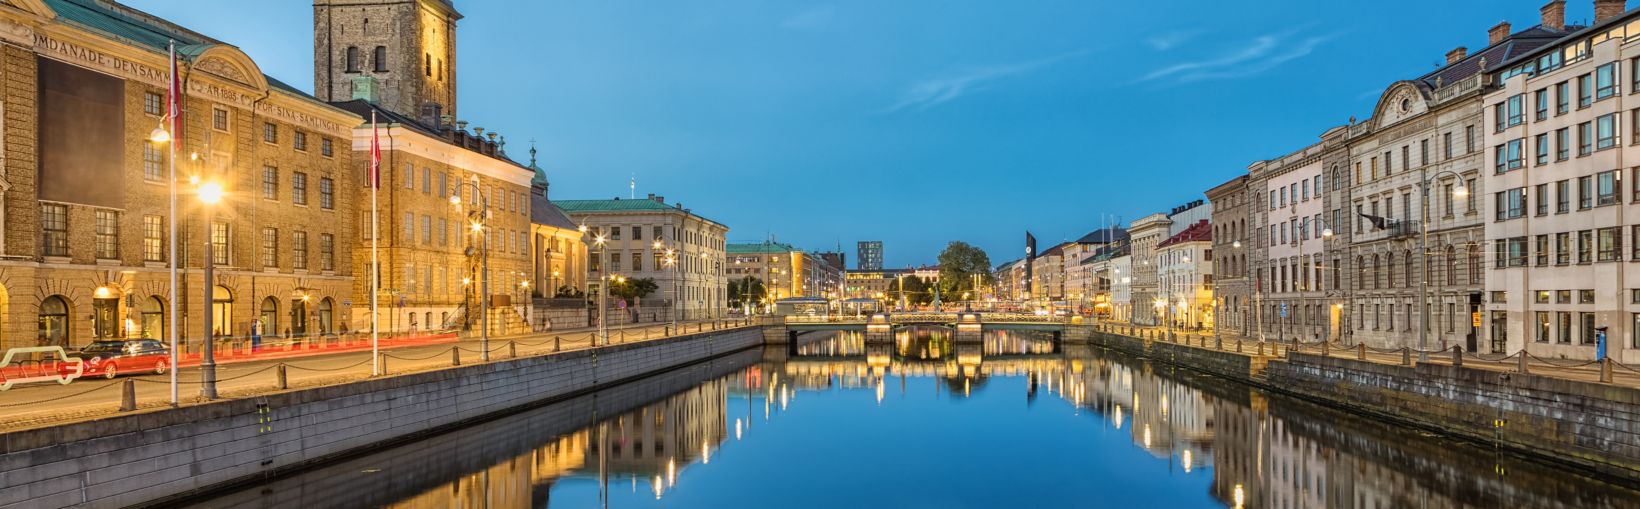 Bylandskap med Store Havnekanal og den tyske kirken (Christinae Kyrka) i skumringen i Göteborg, Sverige